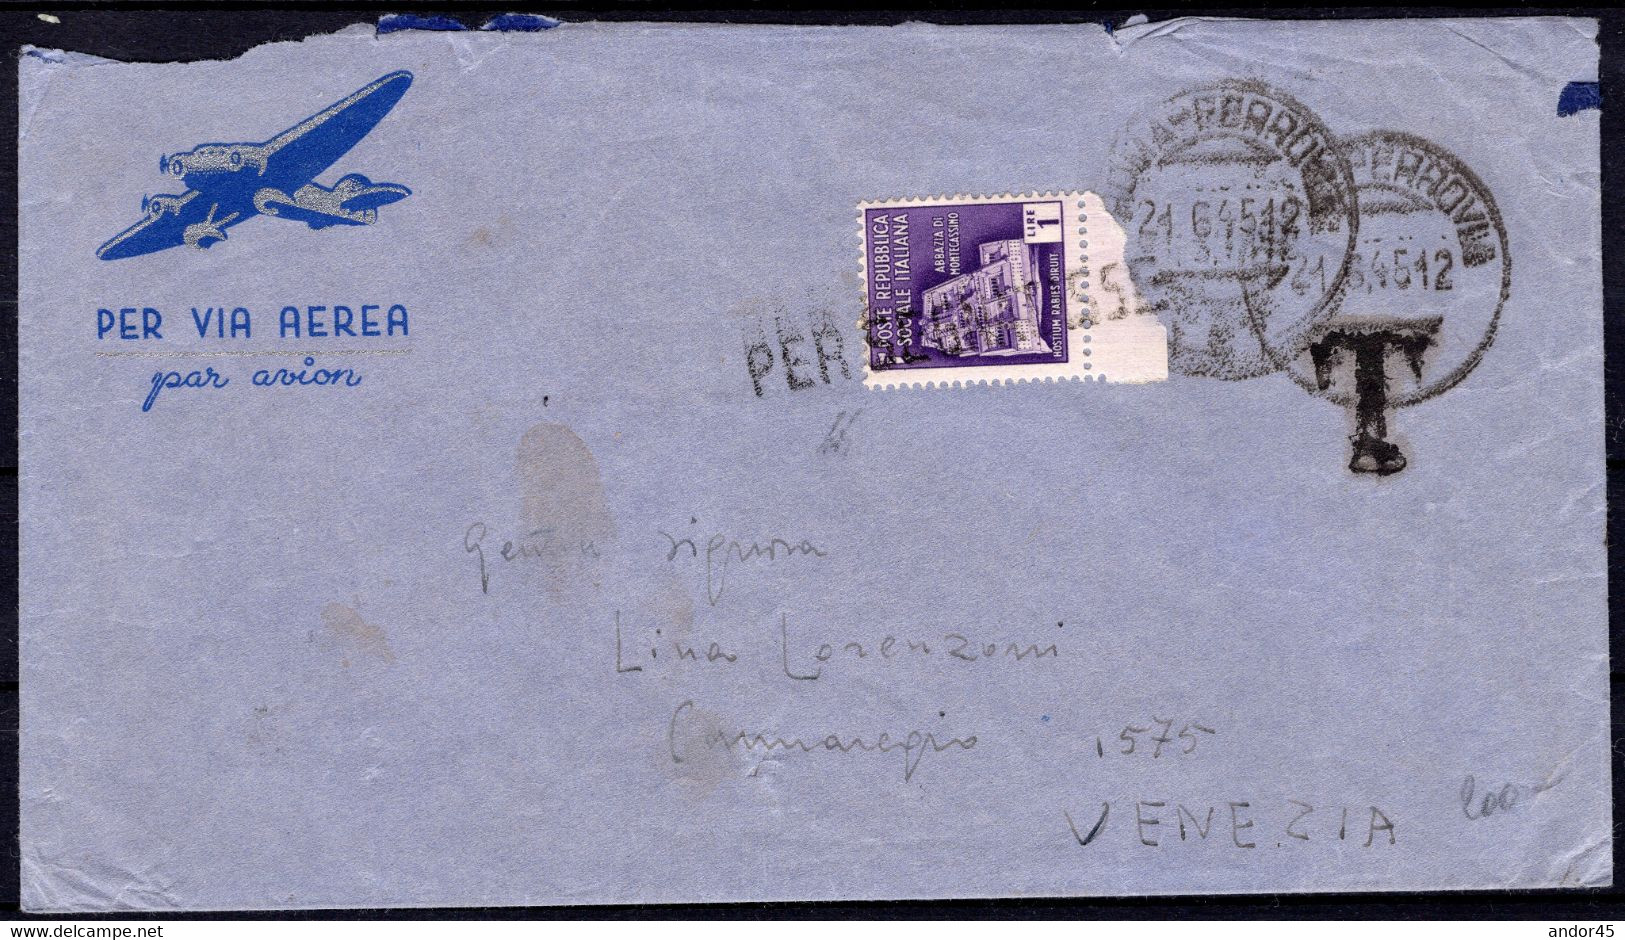 1945 24 GIU AFFRANCATURE IN EMERGENZA AEROGRAMMA INTERNO DA ROMA PER VENEZIA NON AFFRANCATO E TASSATO PER L.1 COL L.1 MO - Airmail